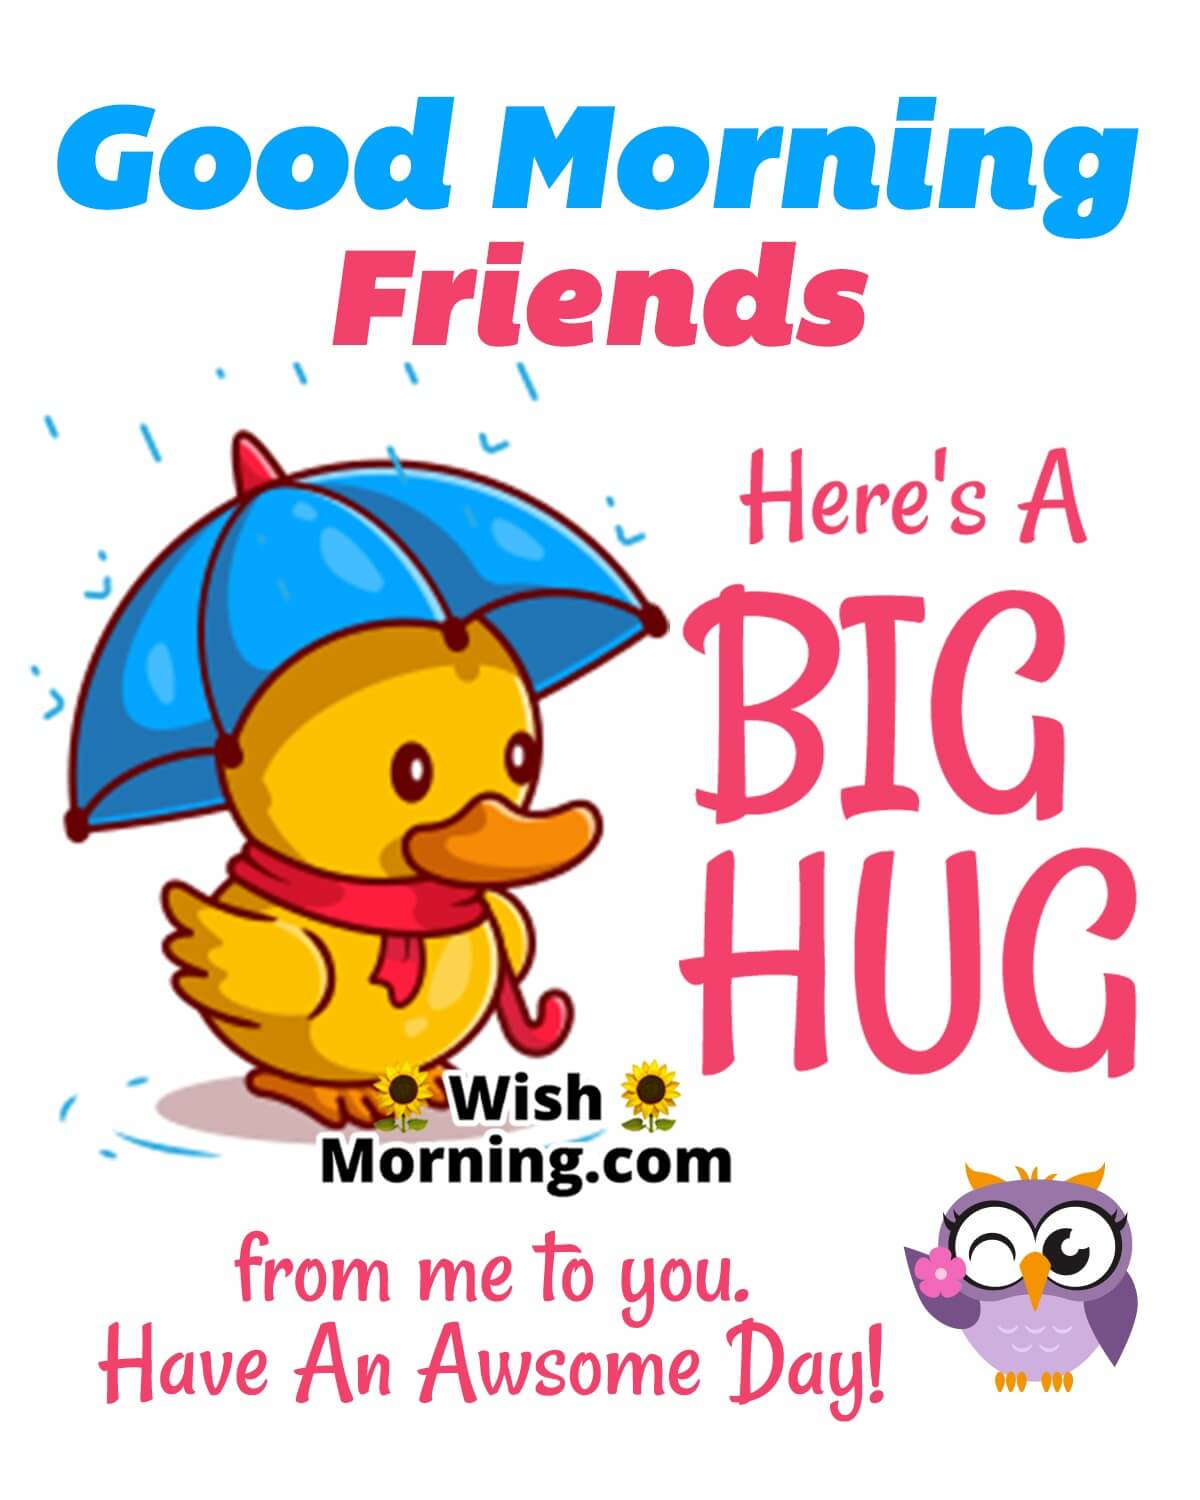 Good Morning Hug For Friends